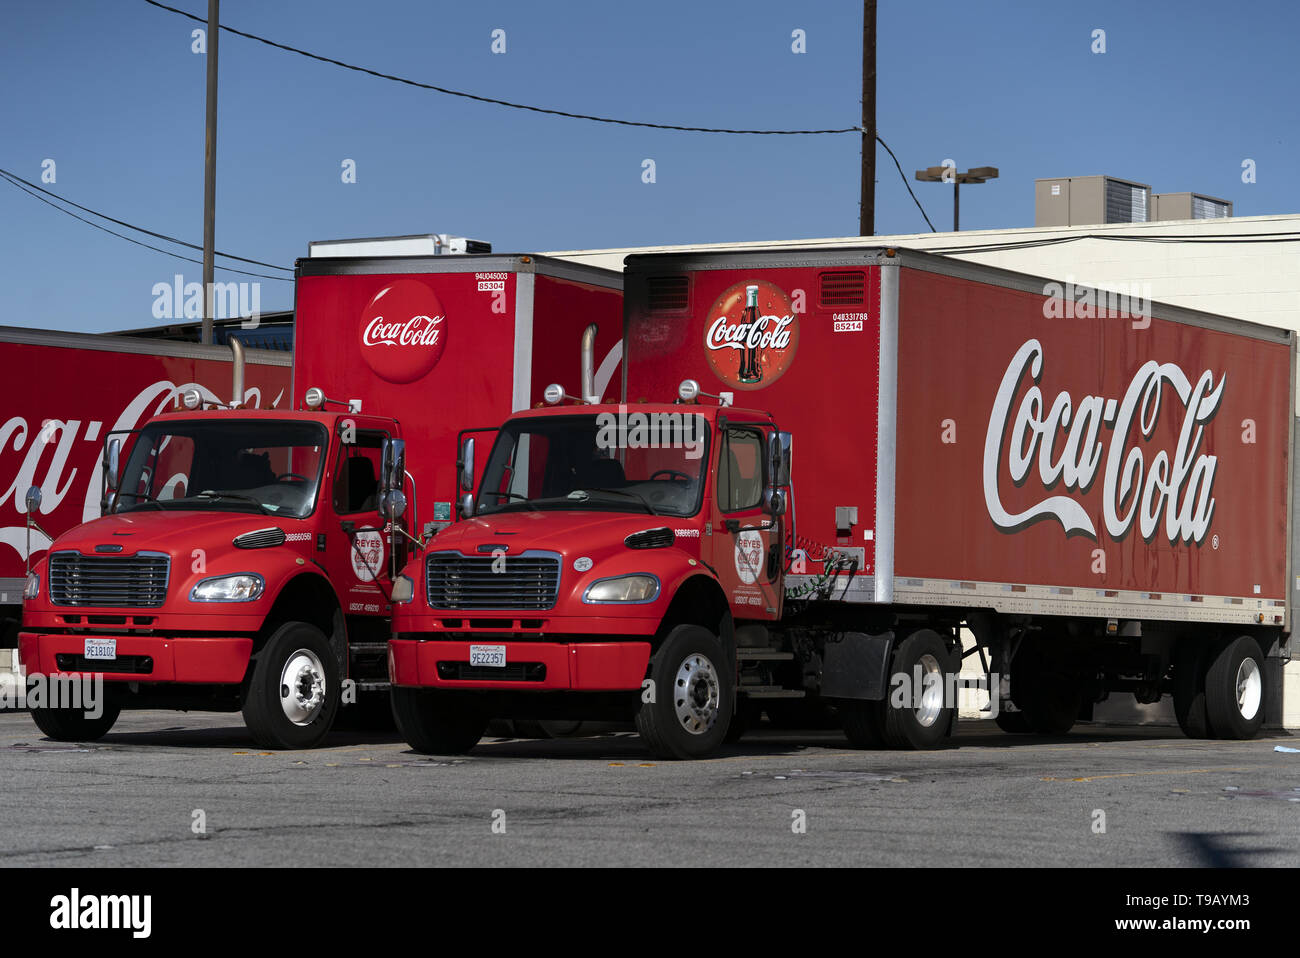 Los Angeles, CA, USA. Feb 11, 2019. Les camions de livraison Coca-Cola vu à Los Angeles, Californie. Ronen Crédit : Tivony SOPA/Images/ZUMA/Alamy Fil Live News Banque D'Images